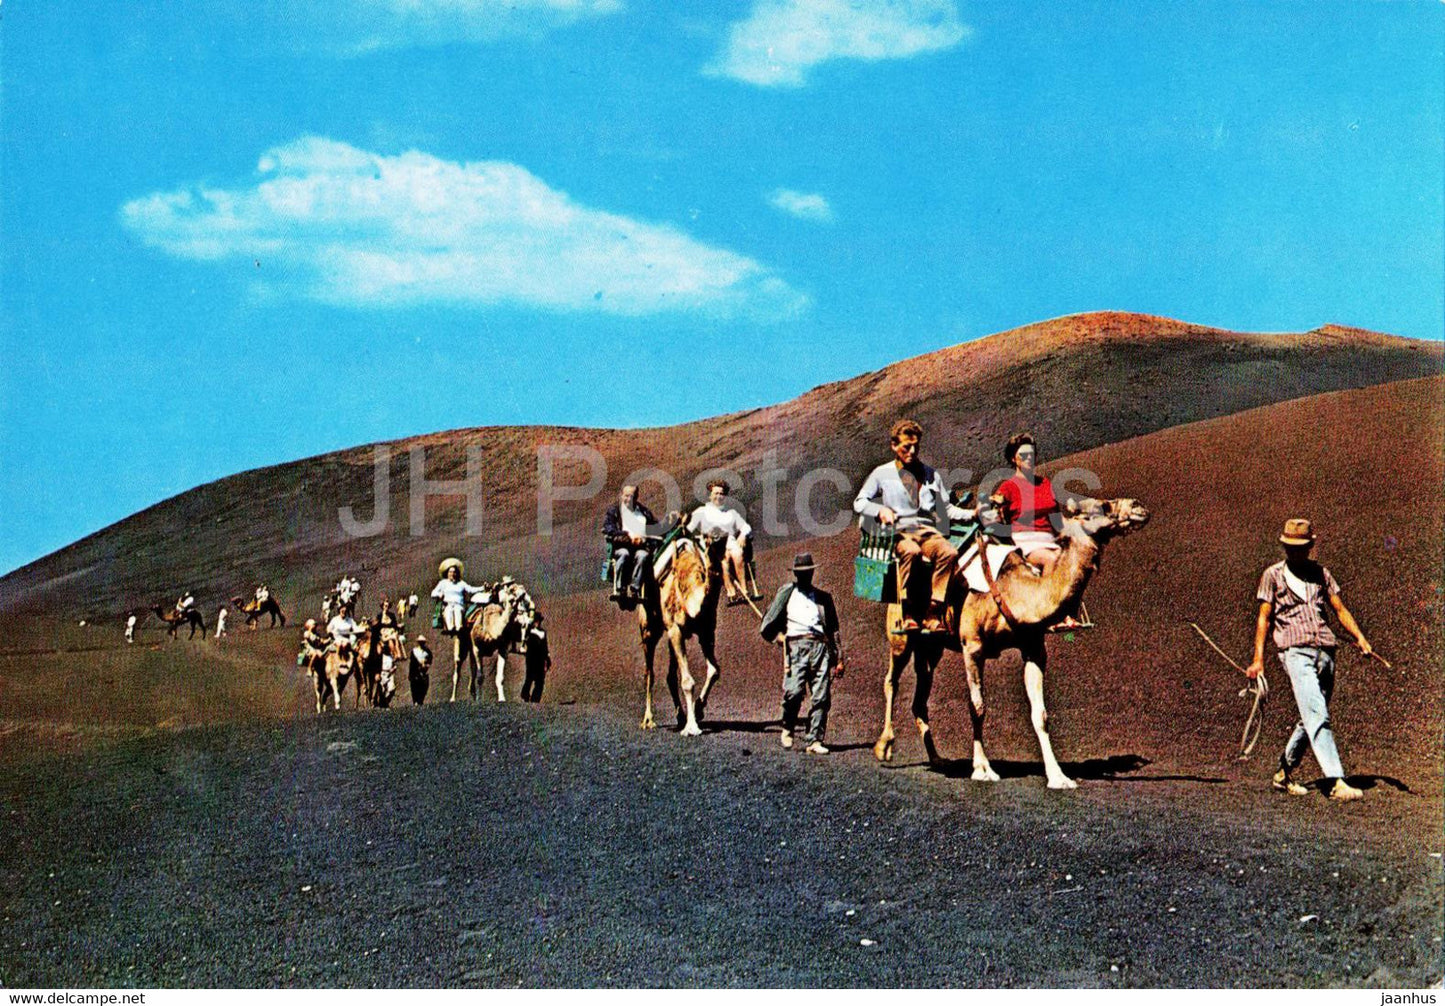 Islas Canarias - Caravana de camellos con turistas - animals - camel - 2290 - Spain - unused - JH Postcards